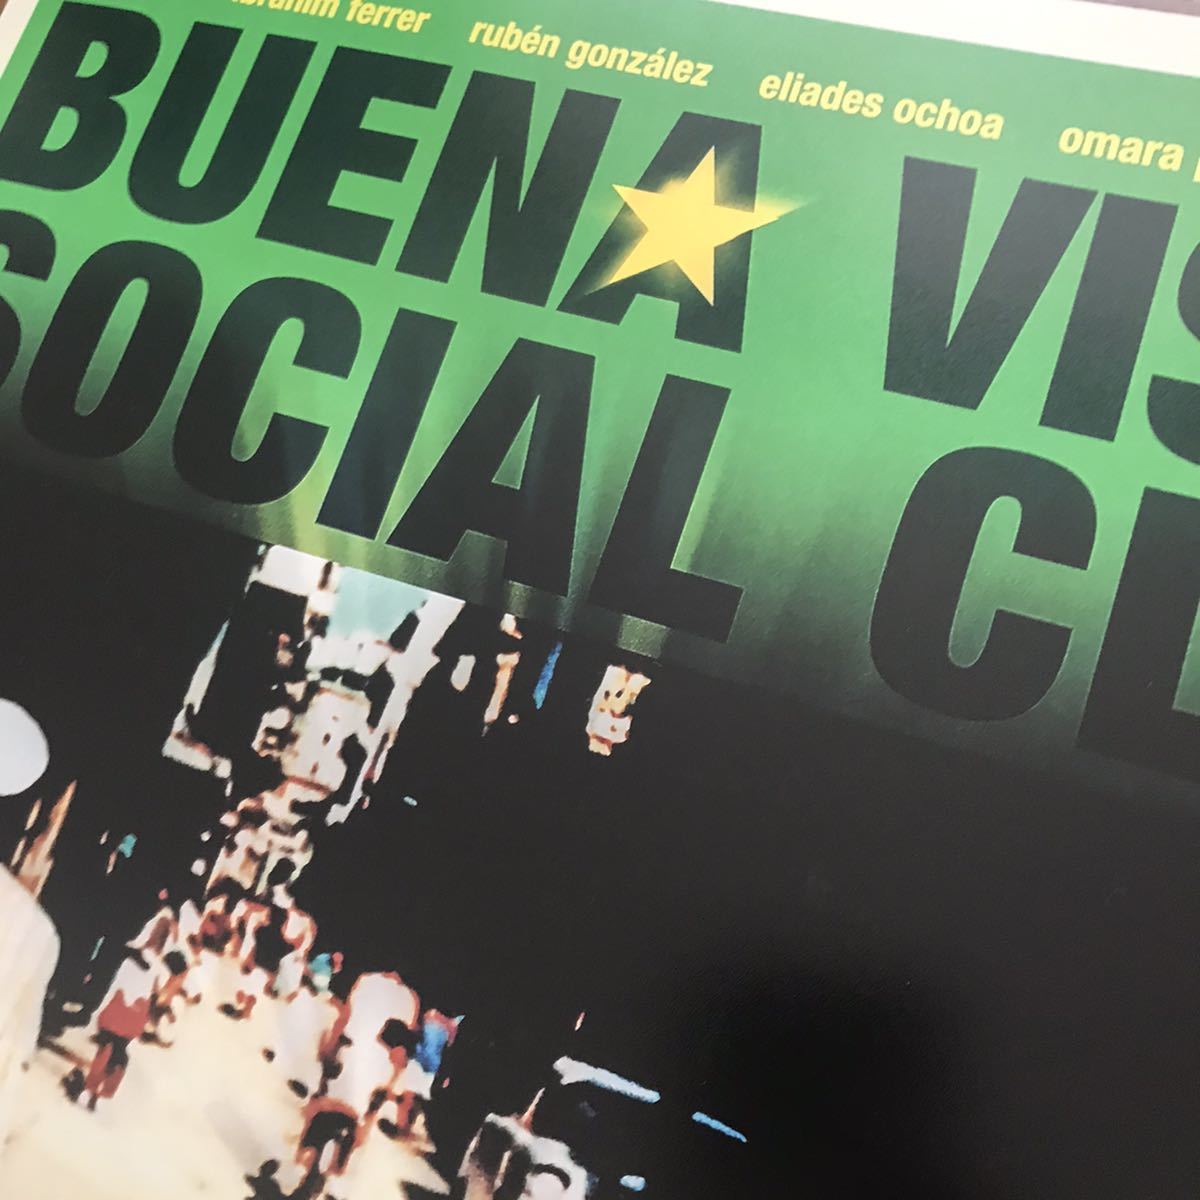  постер [bena* Vista * Social * Club ](Buena Vista Social Club)1999 год *lai* Koo da-/ кий ba/ vi m*ven дюжина 